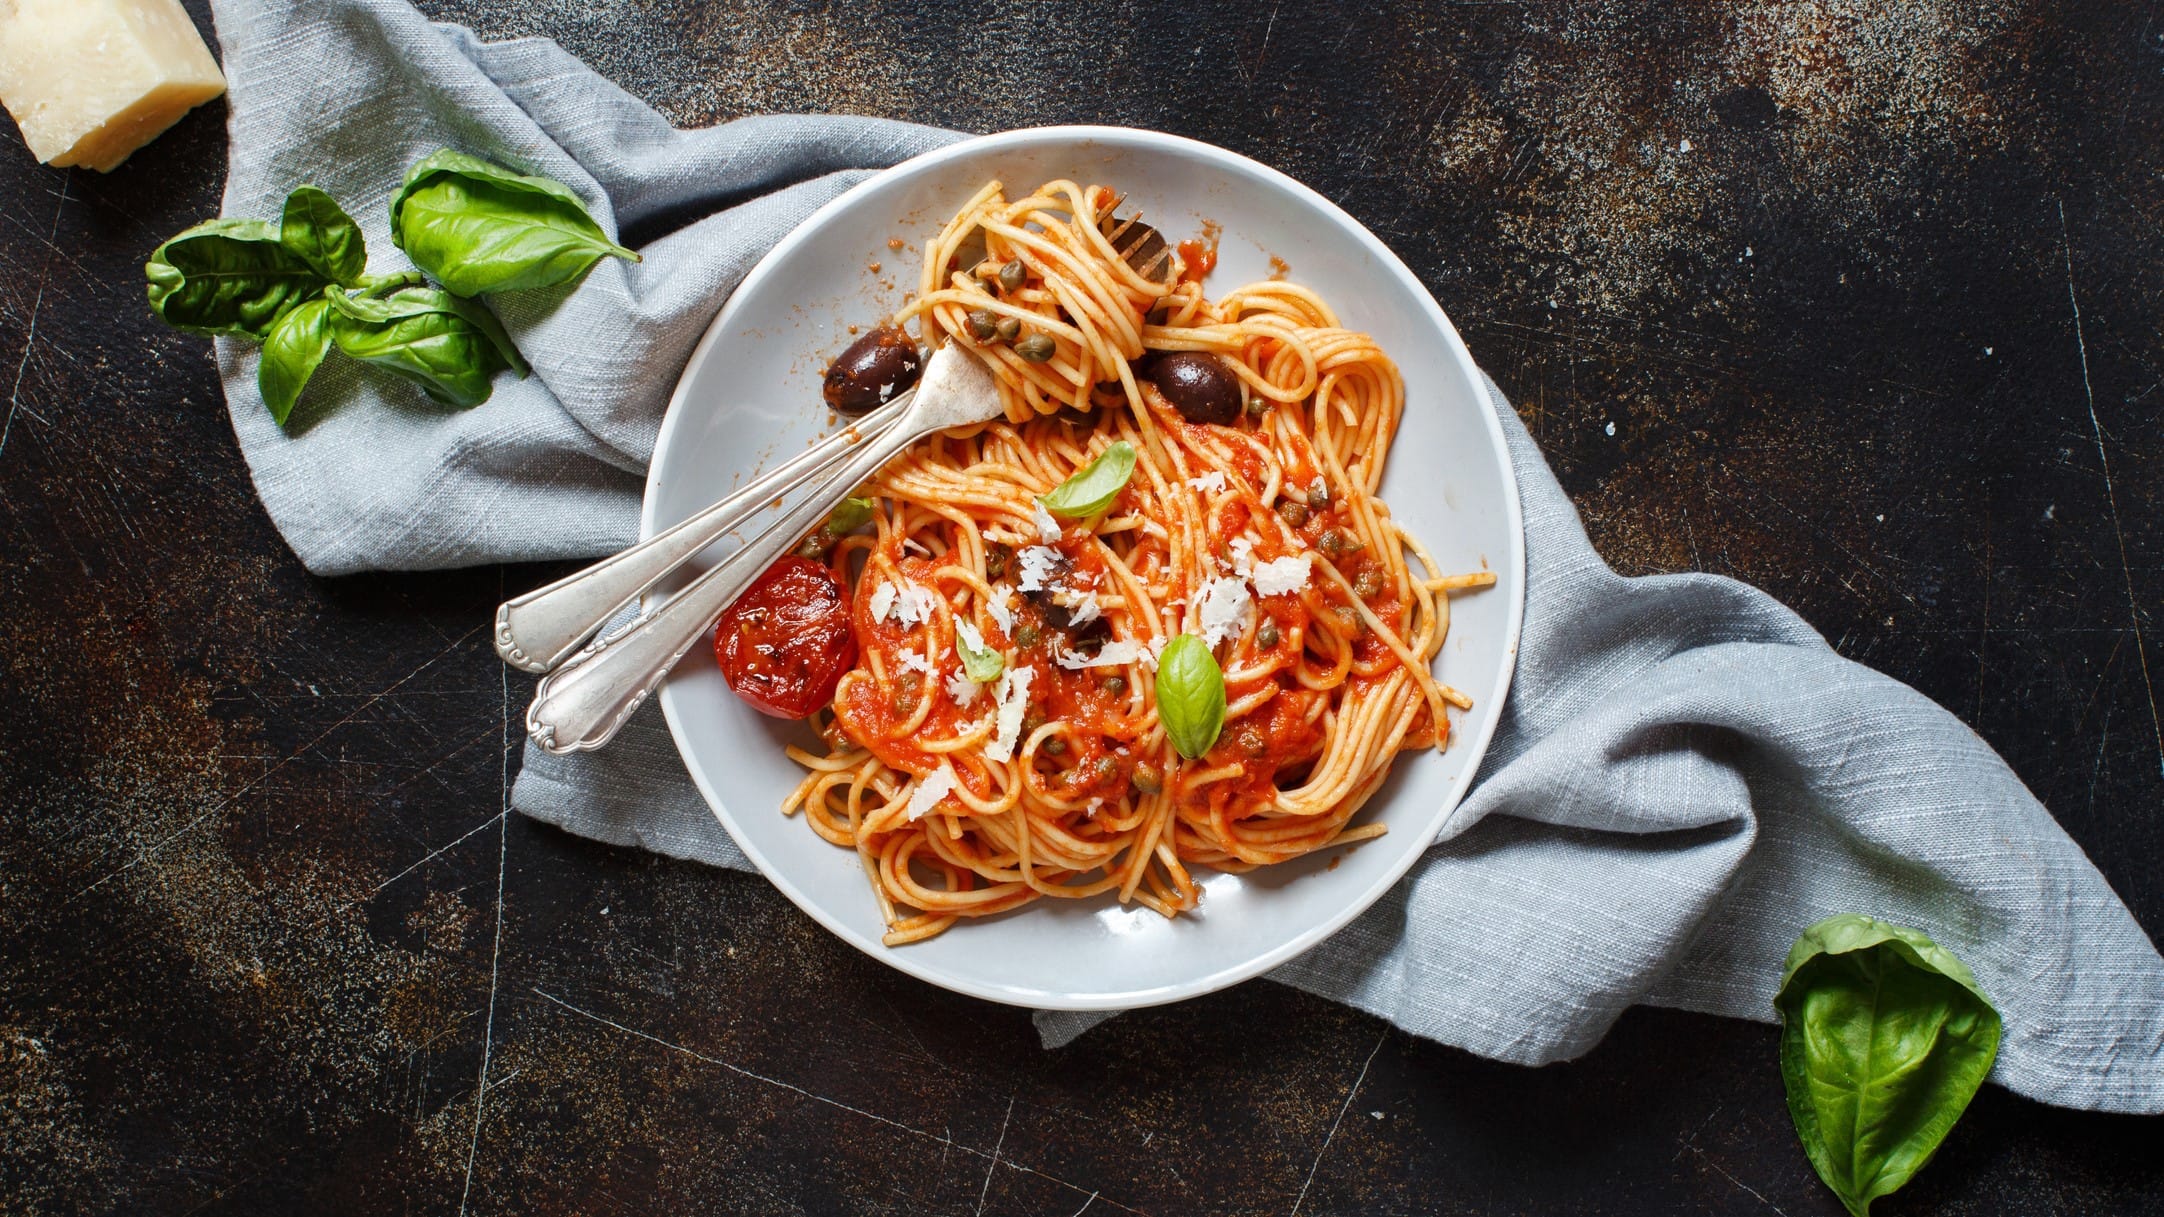 Spaghetti alla puttanesca auf einem Teller mit Besteck. Daneben Basilikum und Parmesan